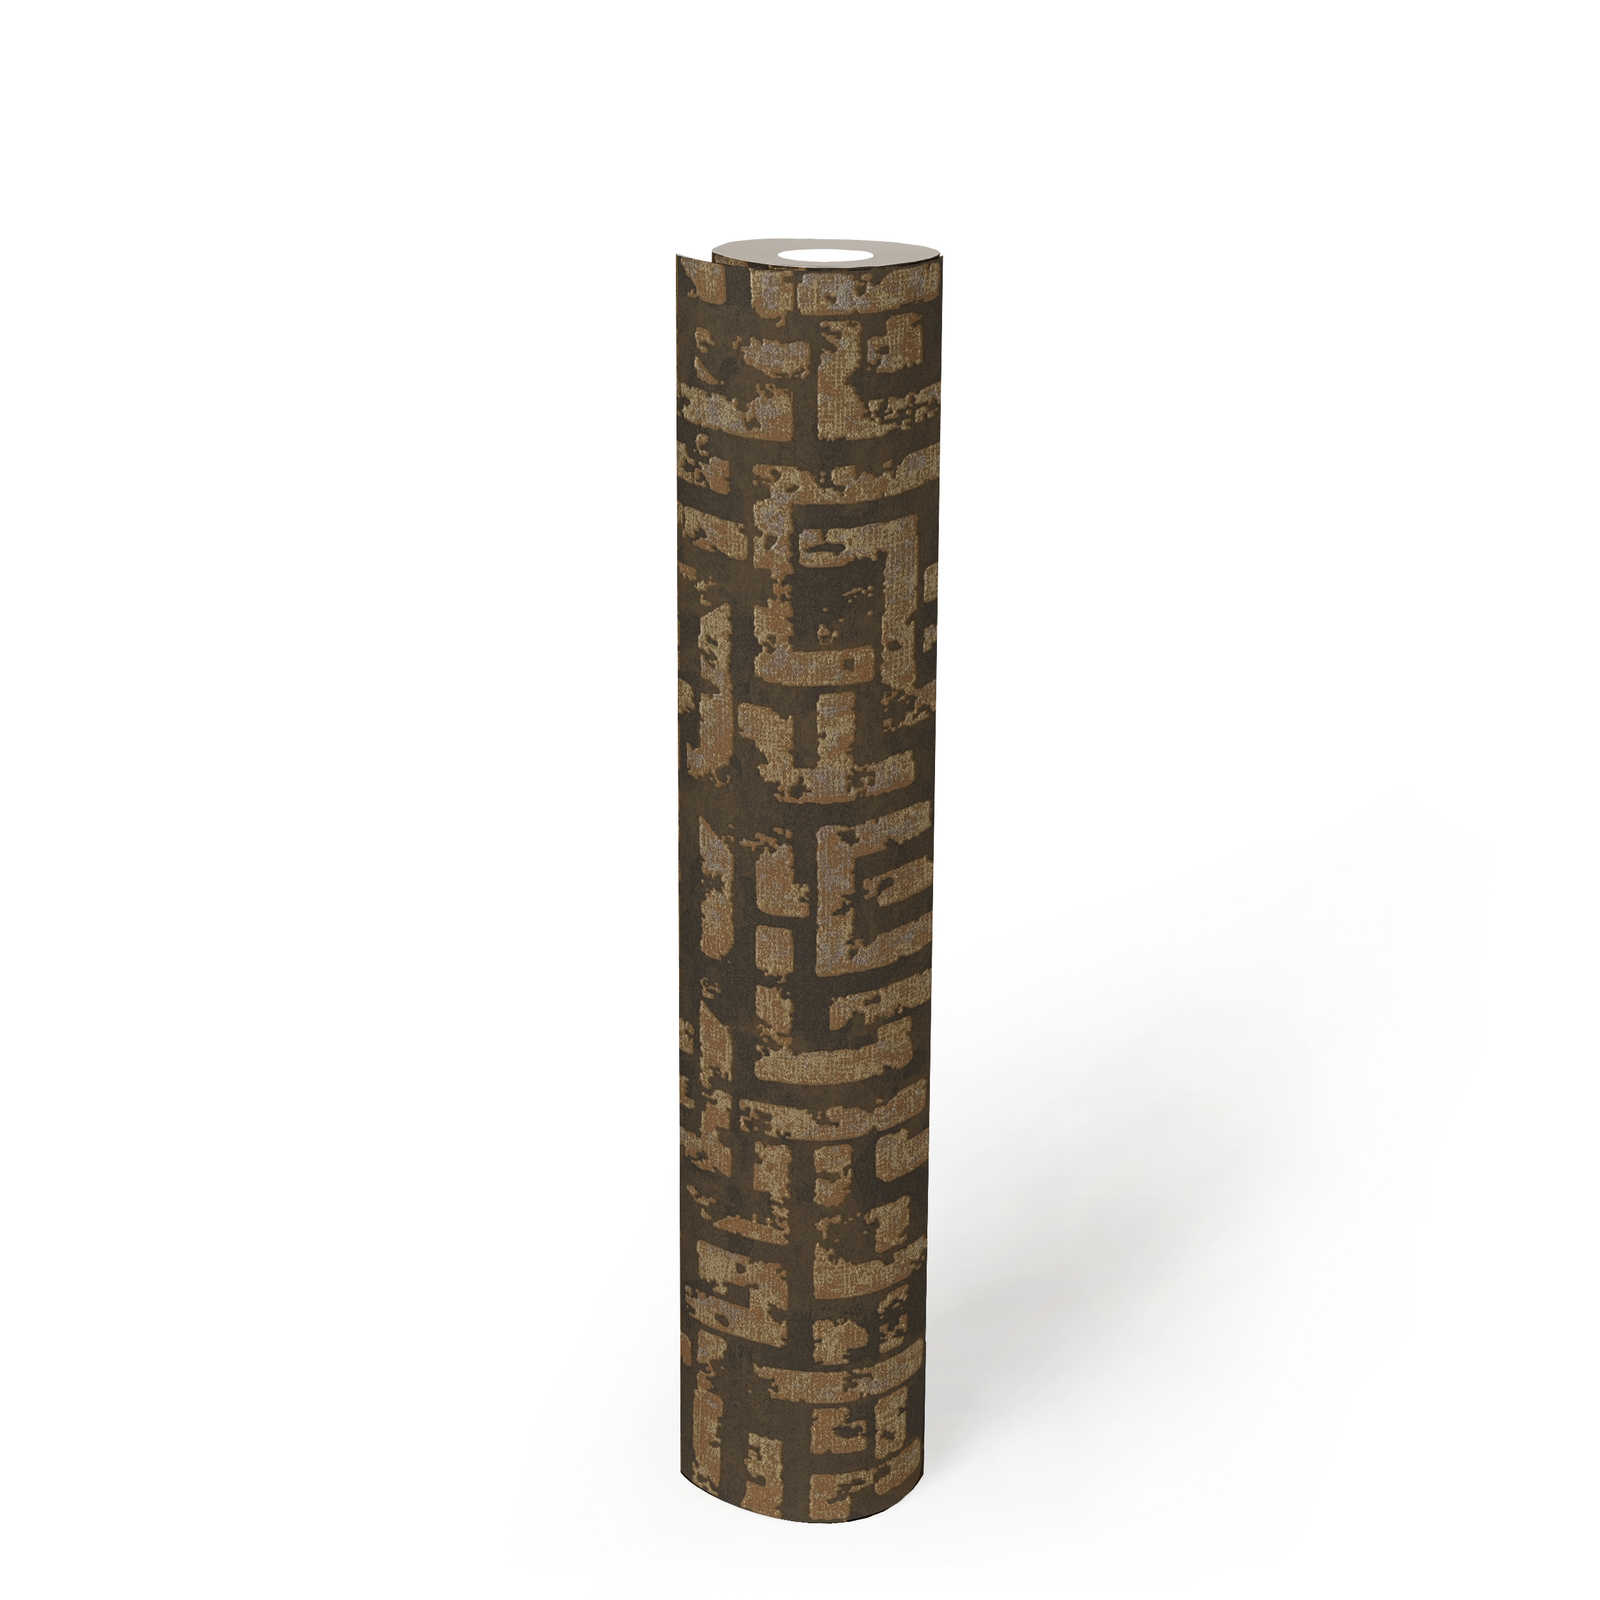             Ethno papier peint à motifs avec design usé & graphique en relief - marron, métallique
        